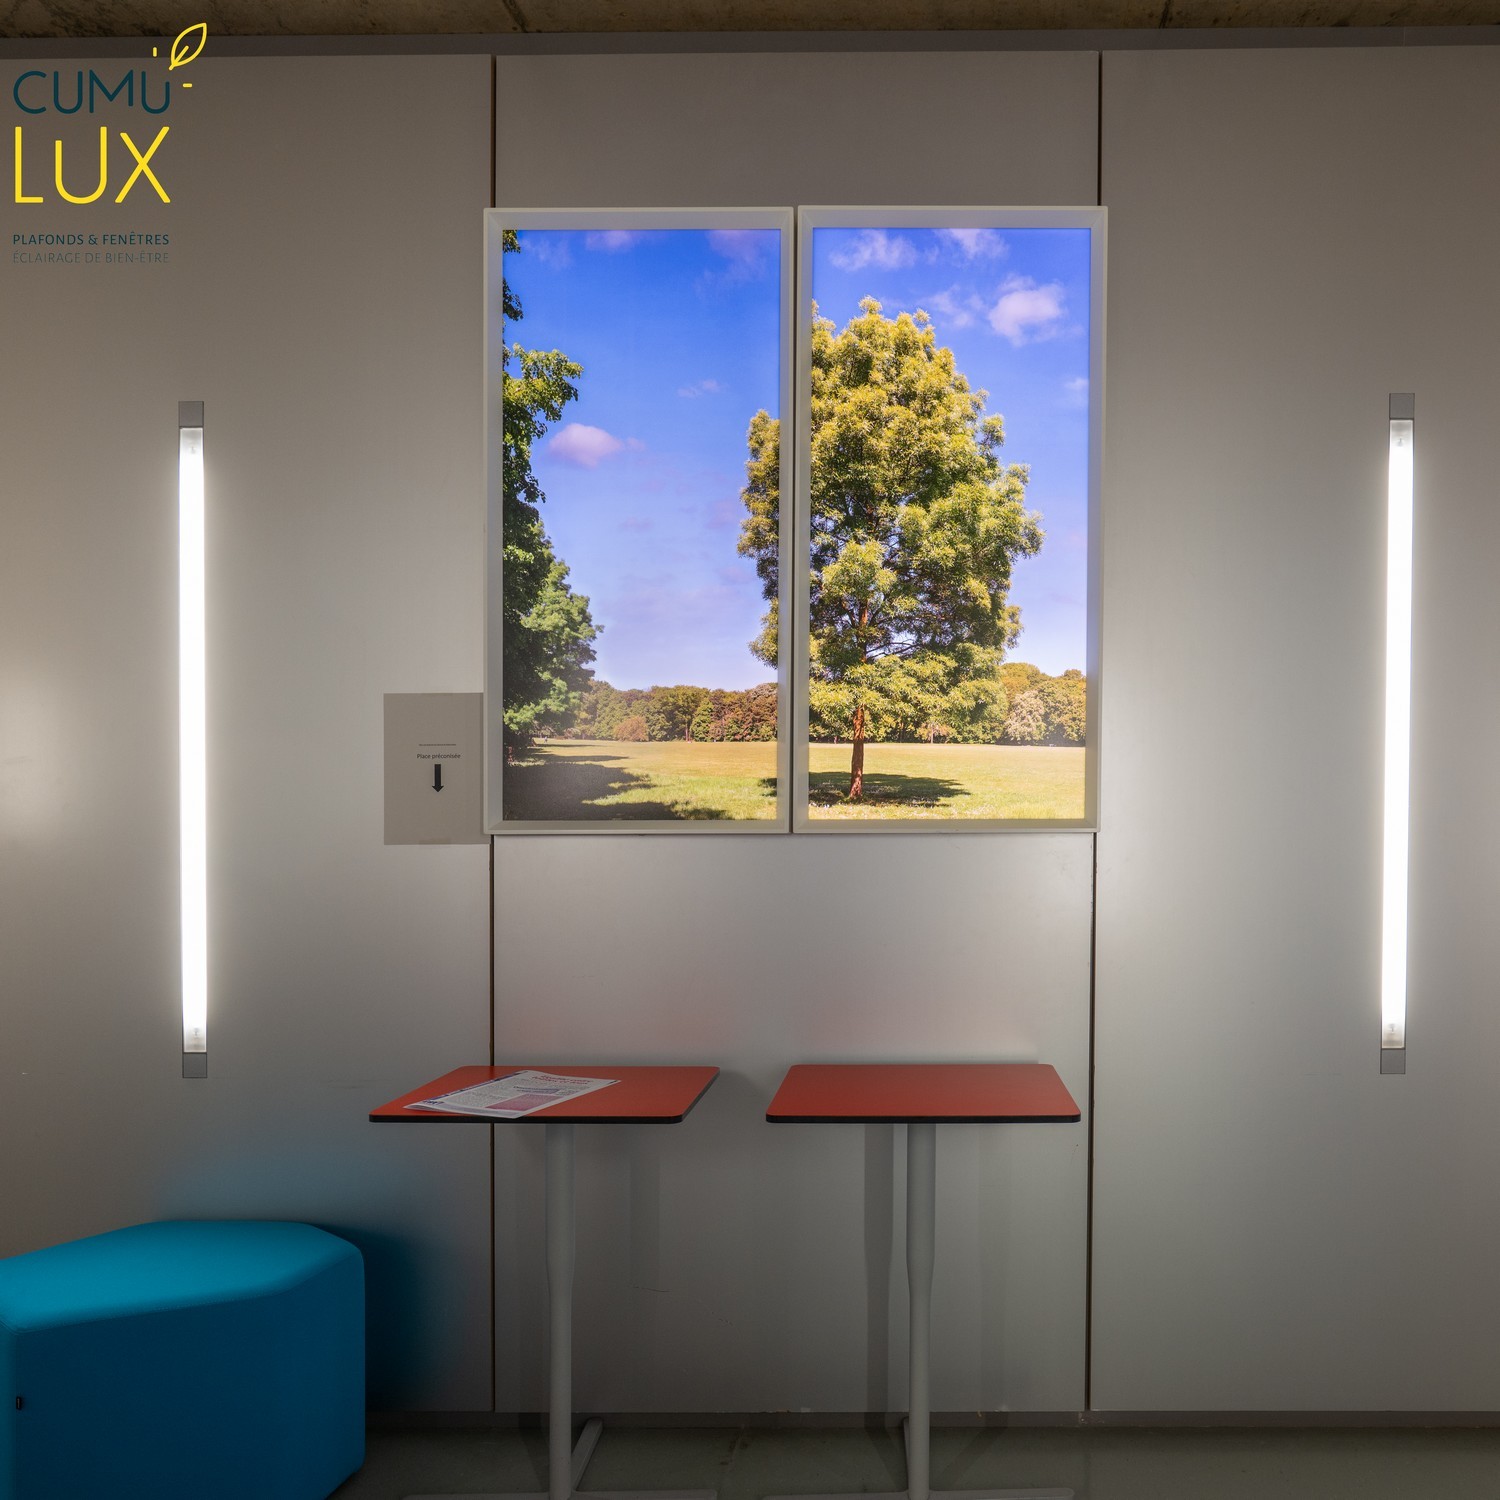 Fausses fenêtres LED Cumulux Evolution, pour apporter de la lumière dans une pièce sombre.